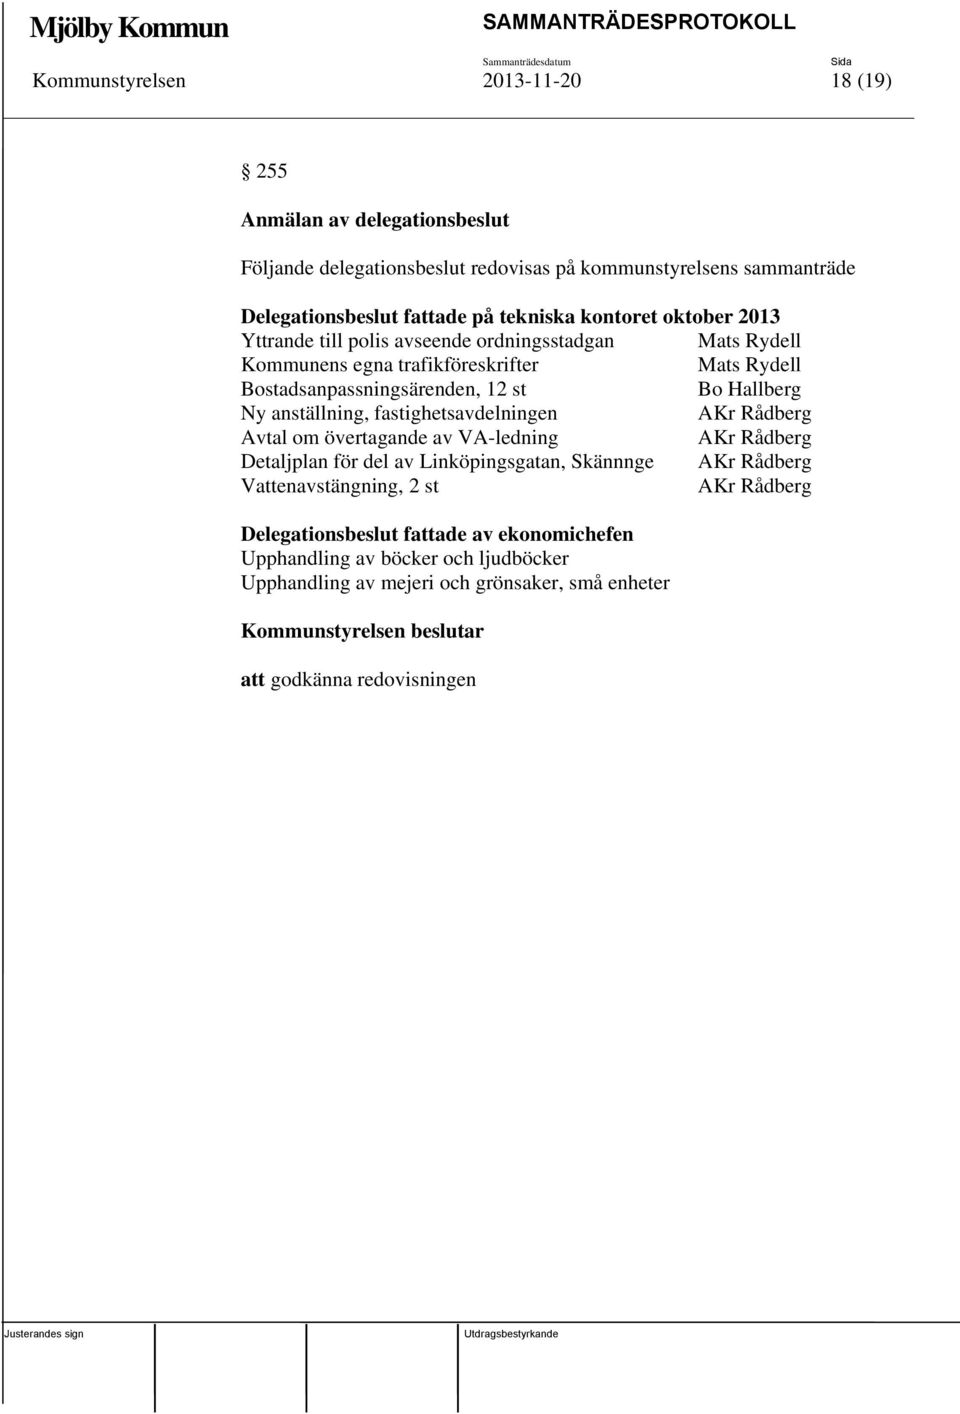 anställning, fastighetsavdelningen AKr Rådberg Avtal om övertagande av VA-ledning AKr Rådberg Detaljplan för del av Linköpingsgatan, Skännnge AKr Rådberg Vattenavstängning, 2 st